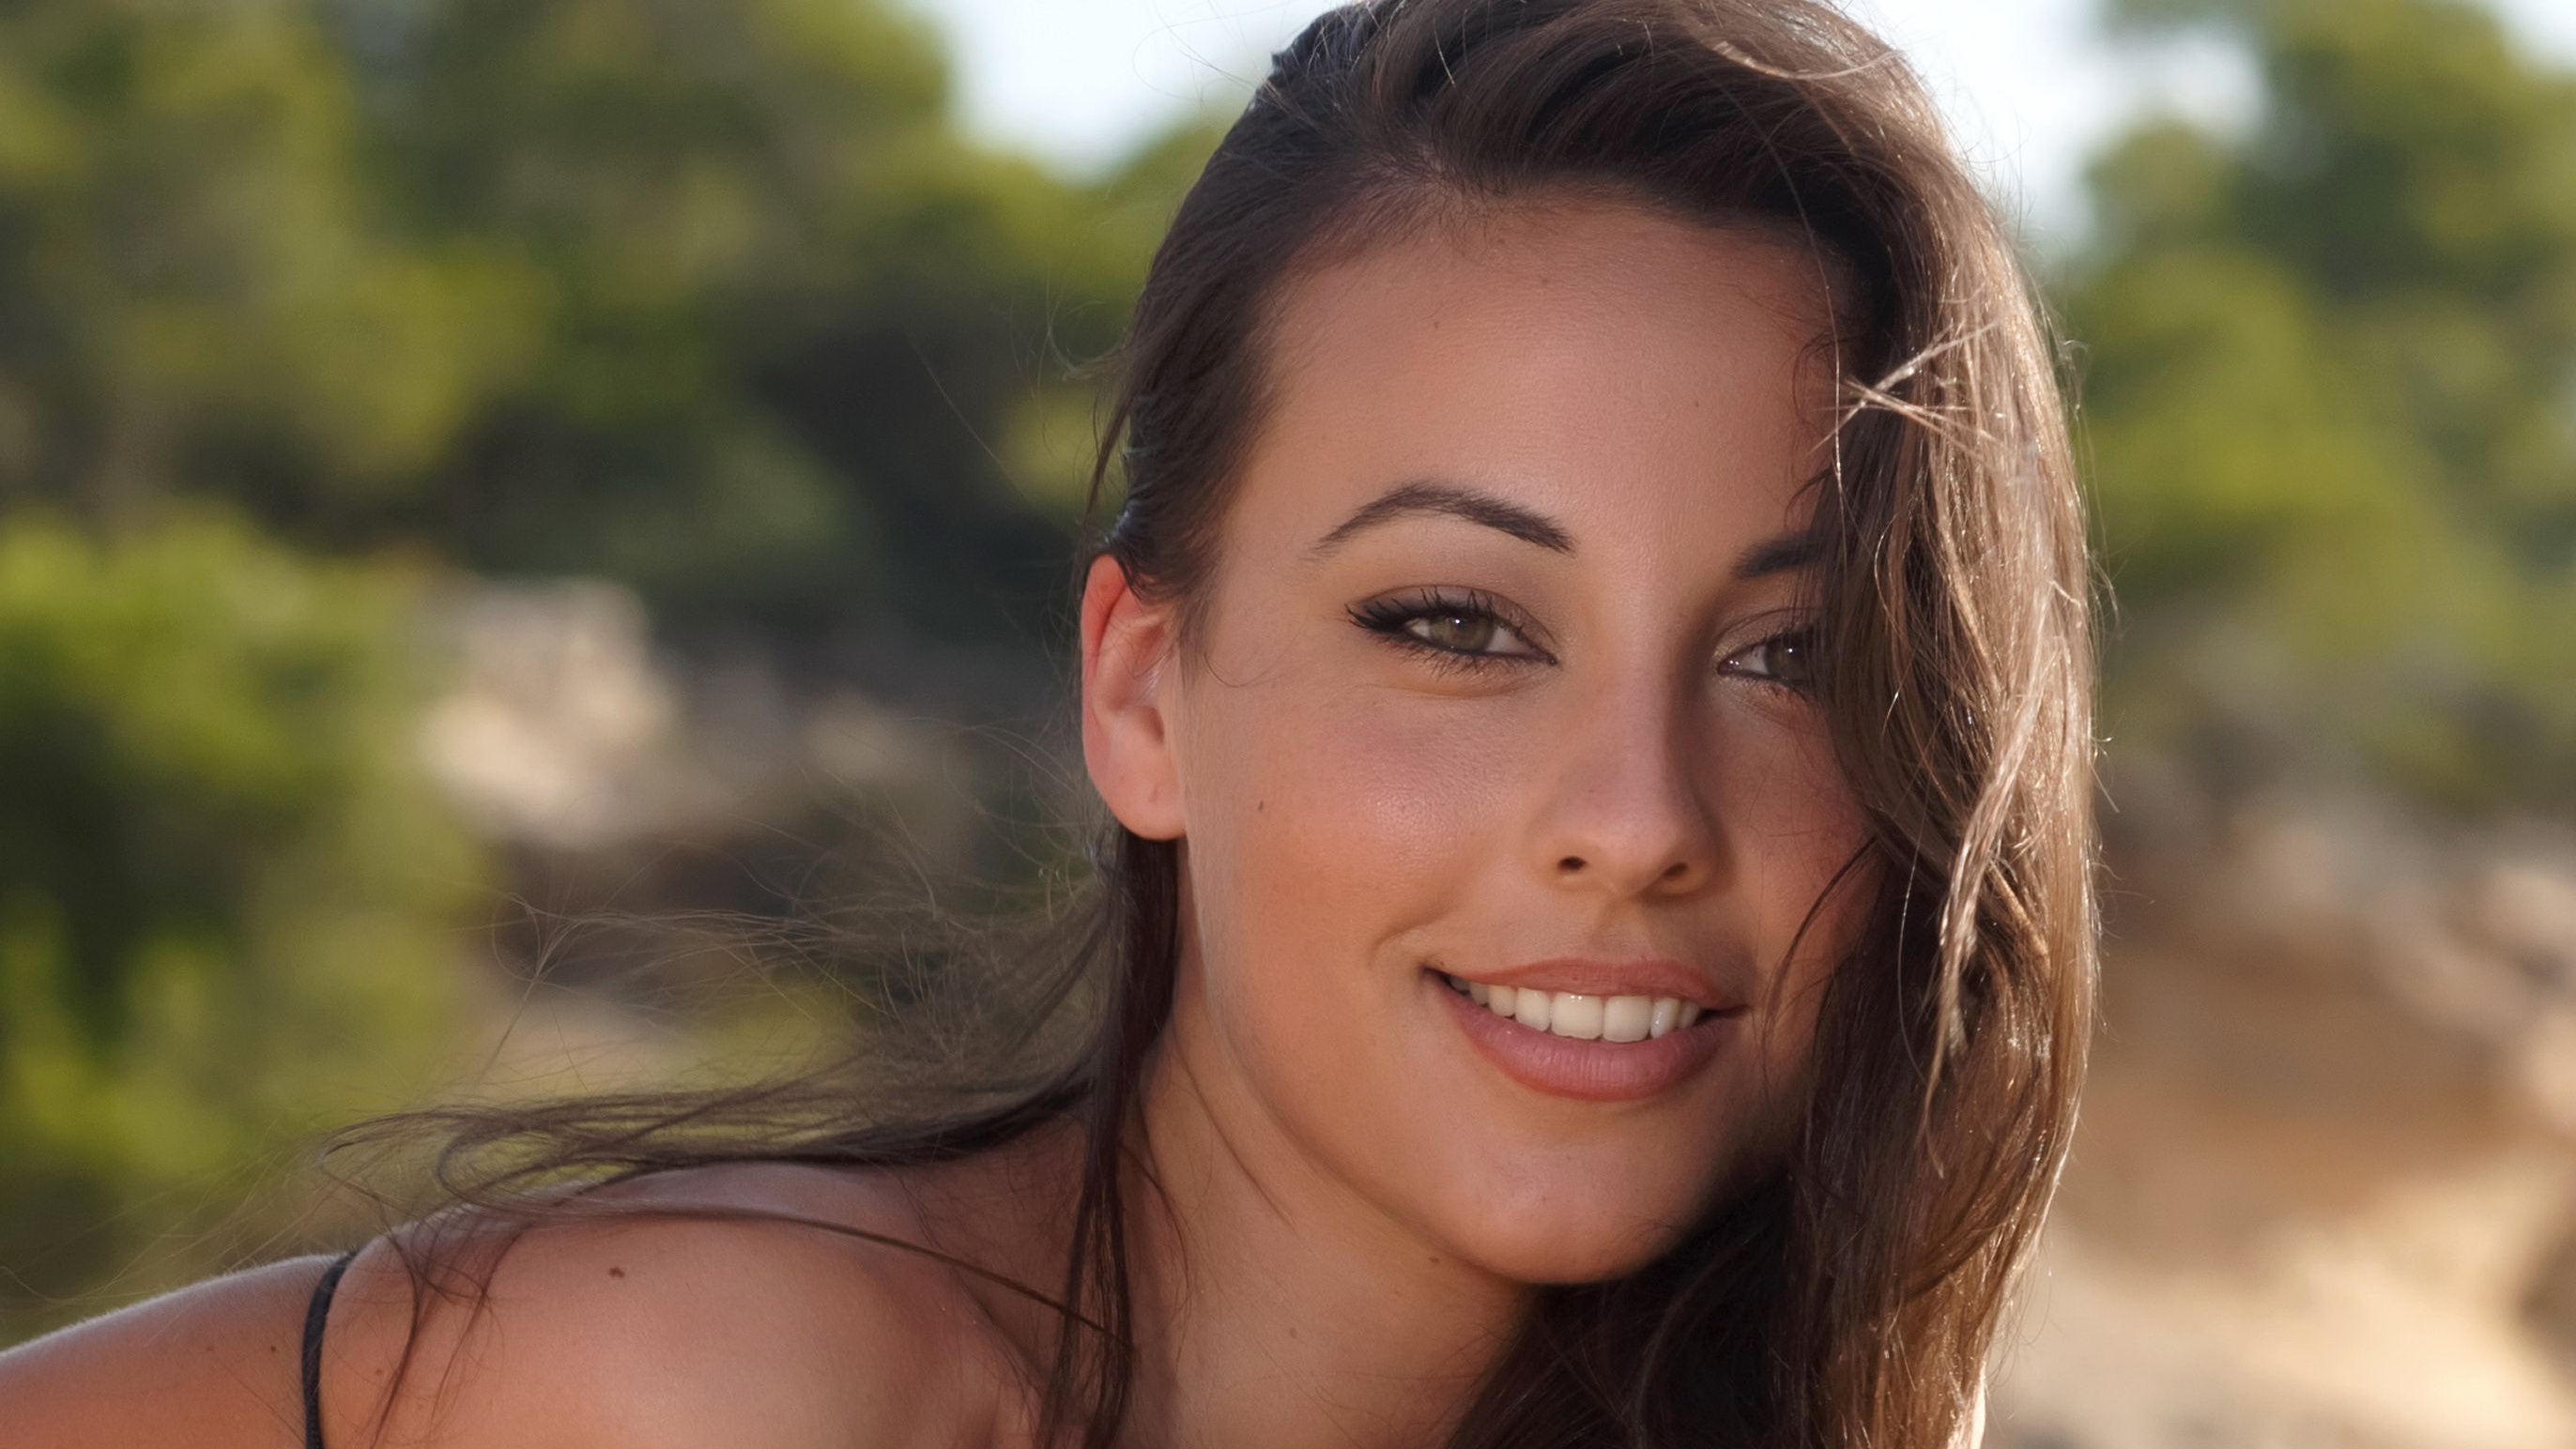 Lorena Garcia Face Women Brunette Smiling Spanish Model Looking At Viewer Spanish Women